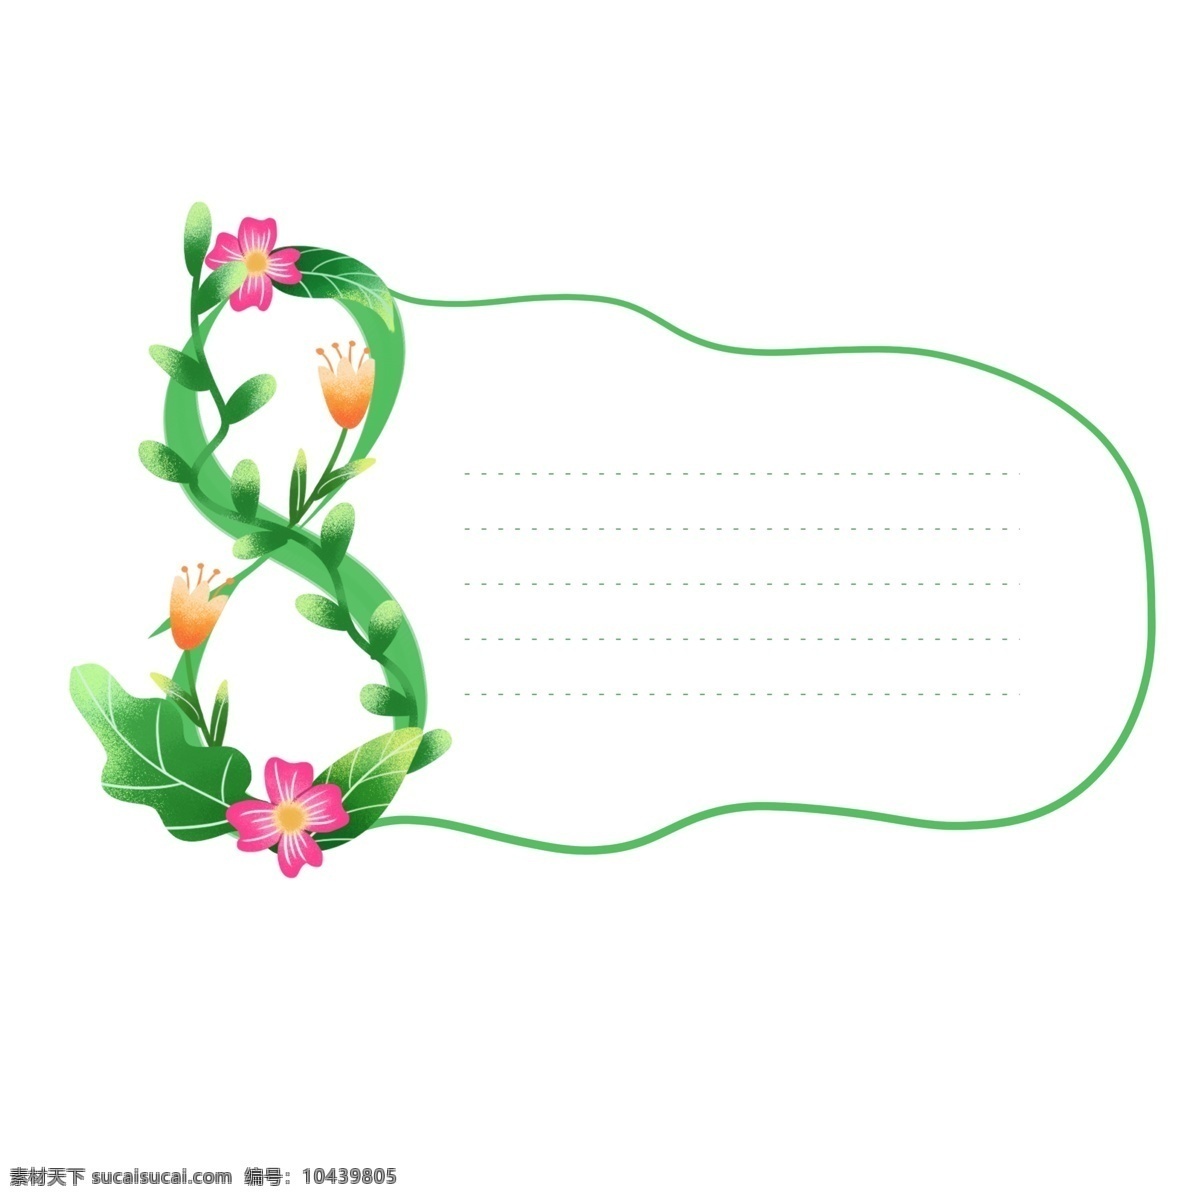 手绘 绿色 清新 数字 植物 鲜花 装饰 边框 元素 手绘植物 数字图案 数字边框 植物元素 绿叶元素 手绘鲜花